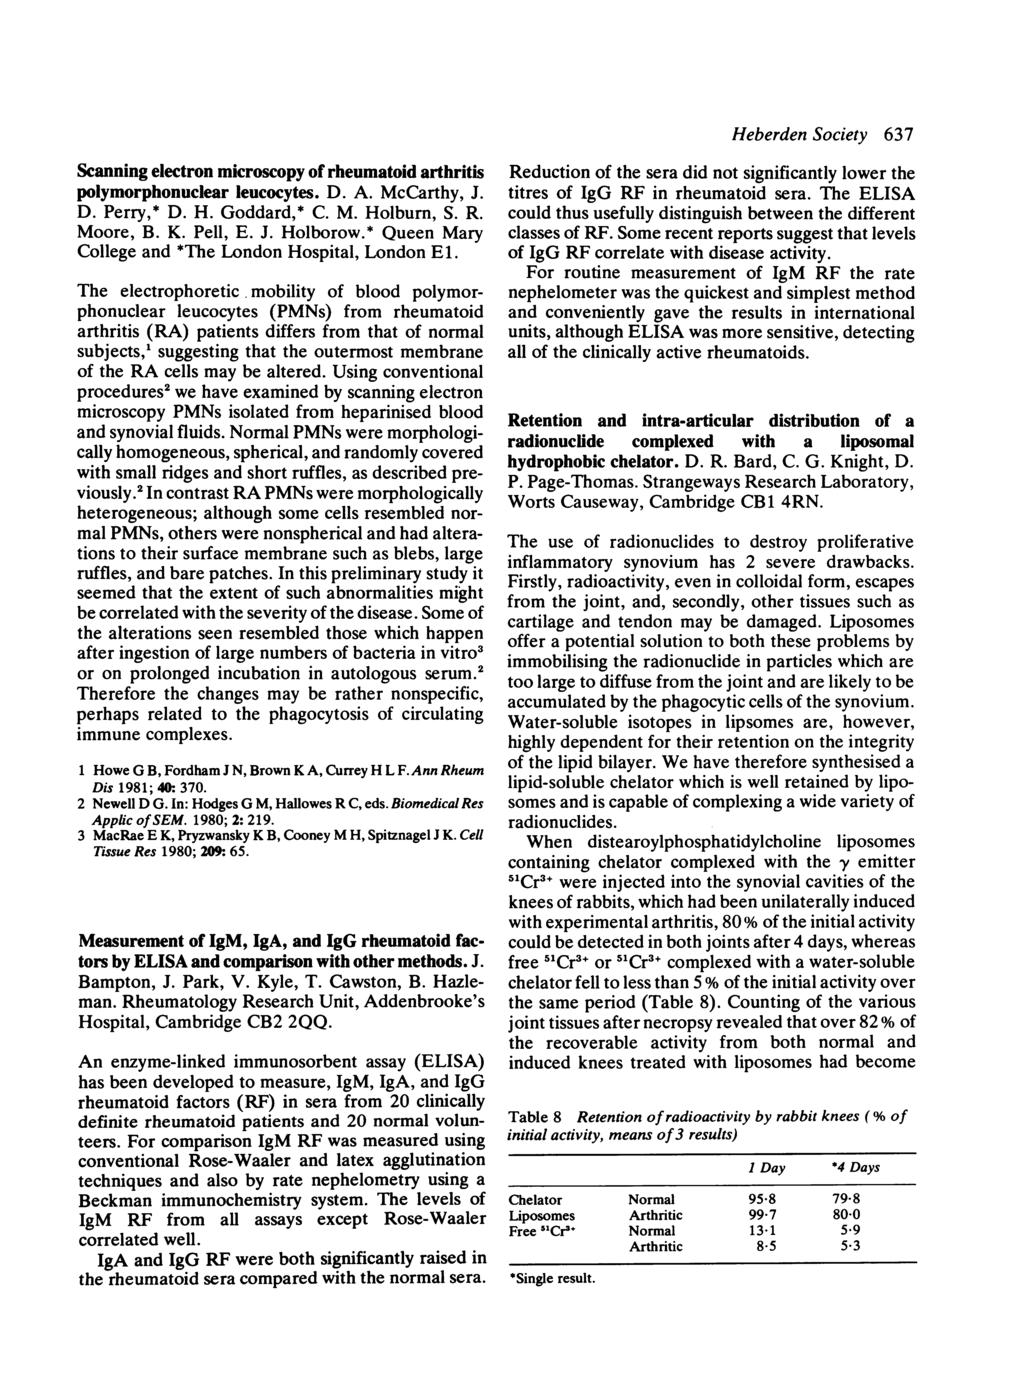 Scanning electron microscopy of rheumatoid arthritis polymorphonuclear leucocytes. D. A. McCarthy, J. D. Perry,* D. H. Goddard,* C. M. Holburn, S. R. Moore, B. K. Pell, E. J. Holborow.